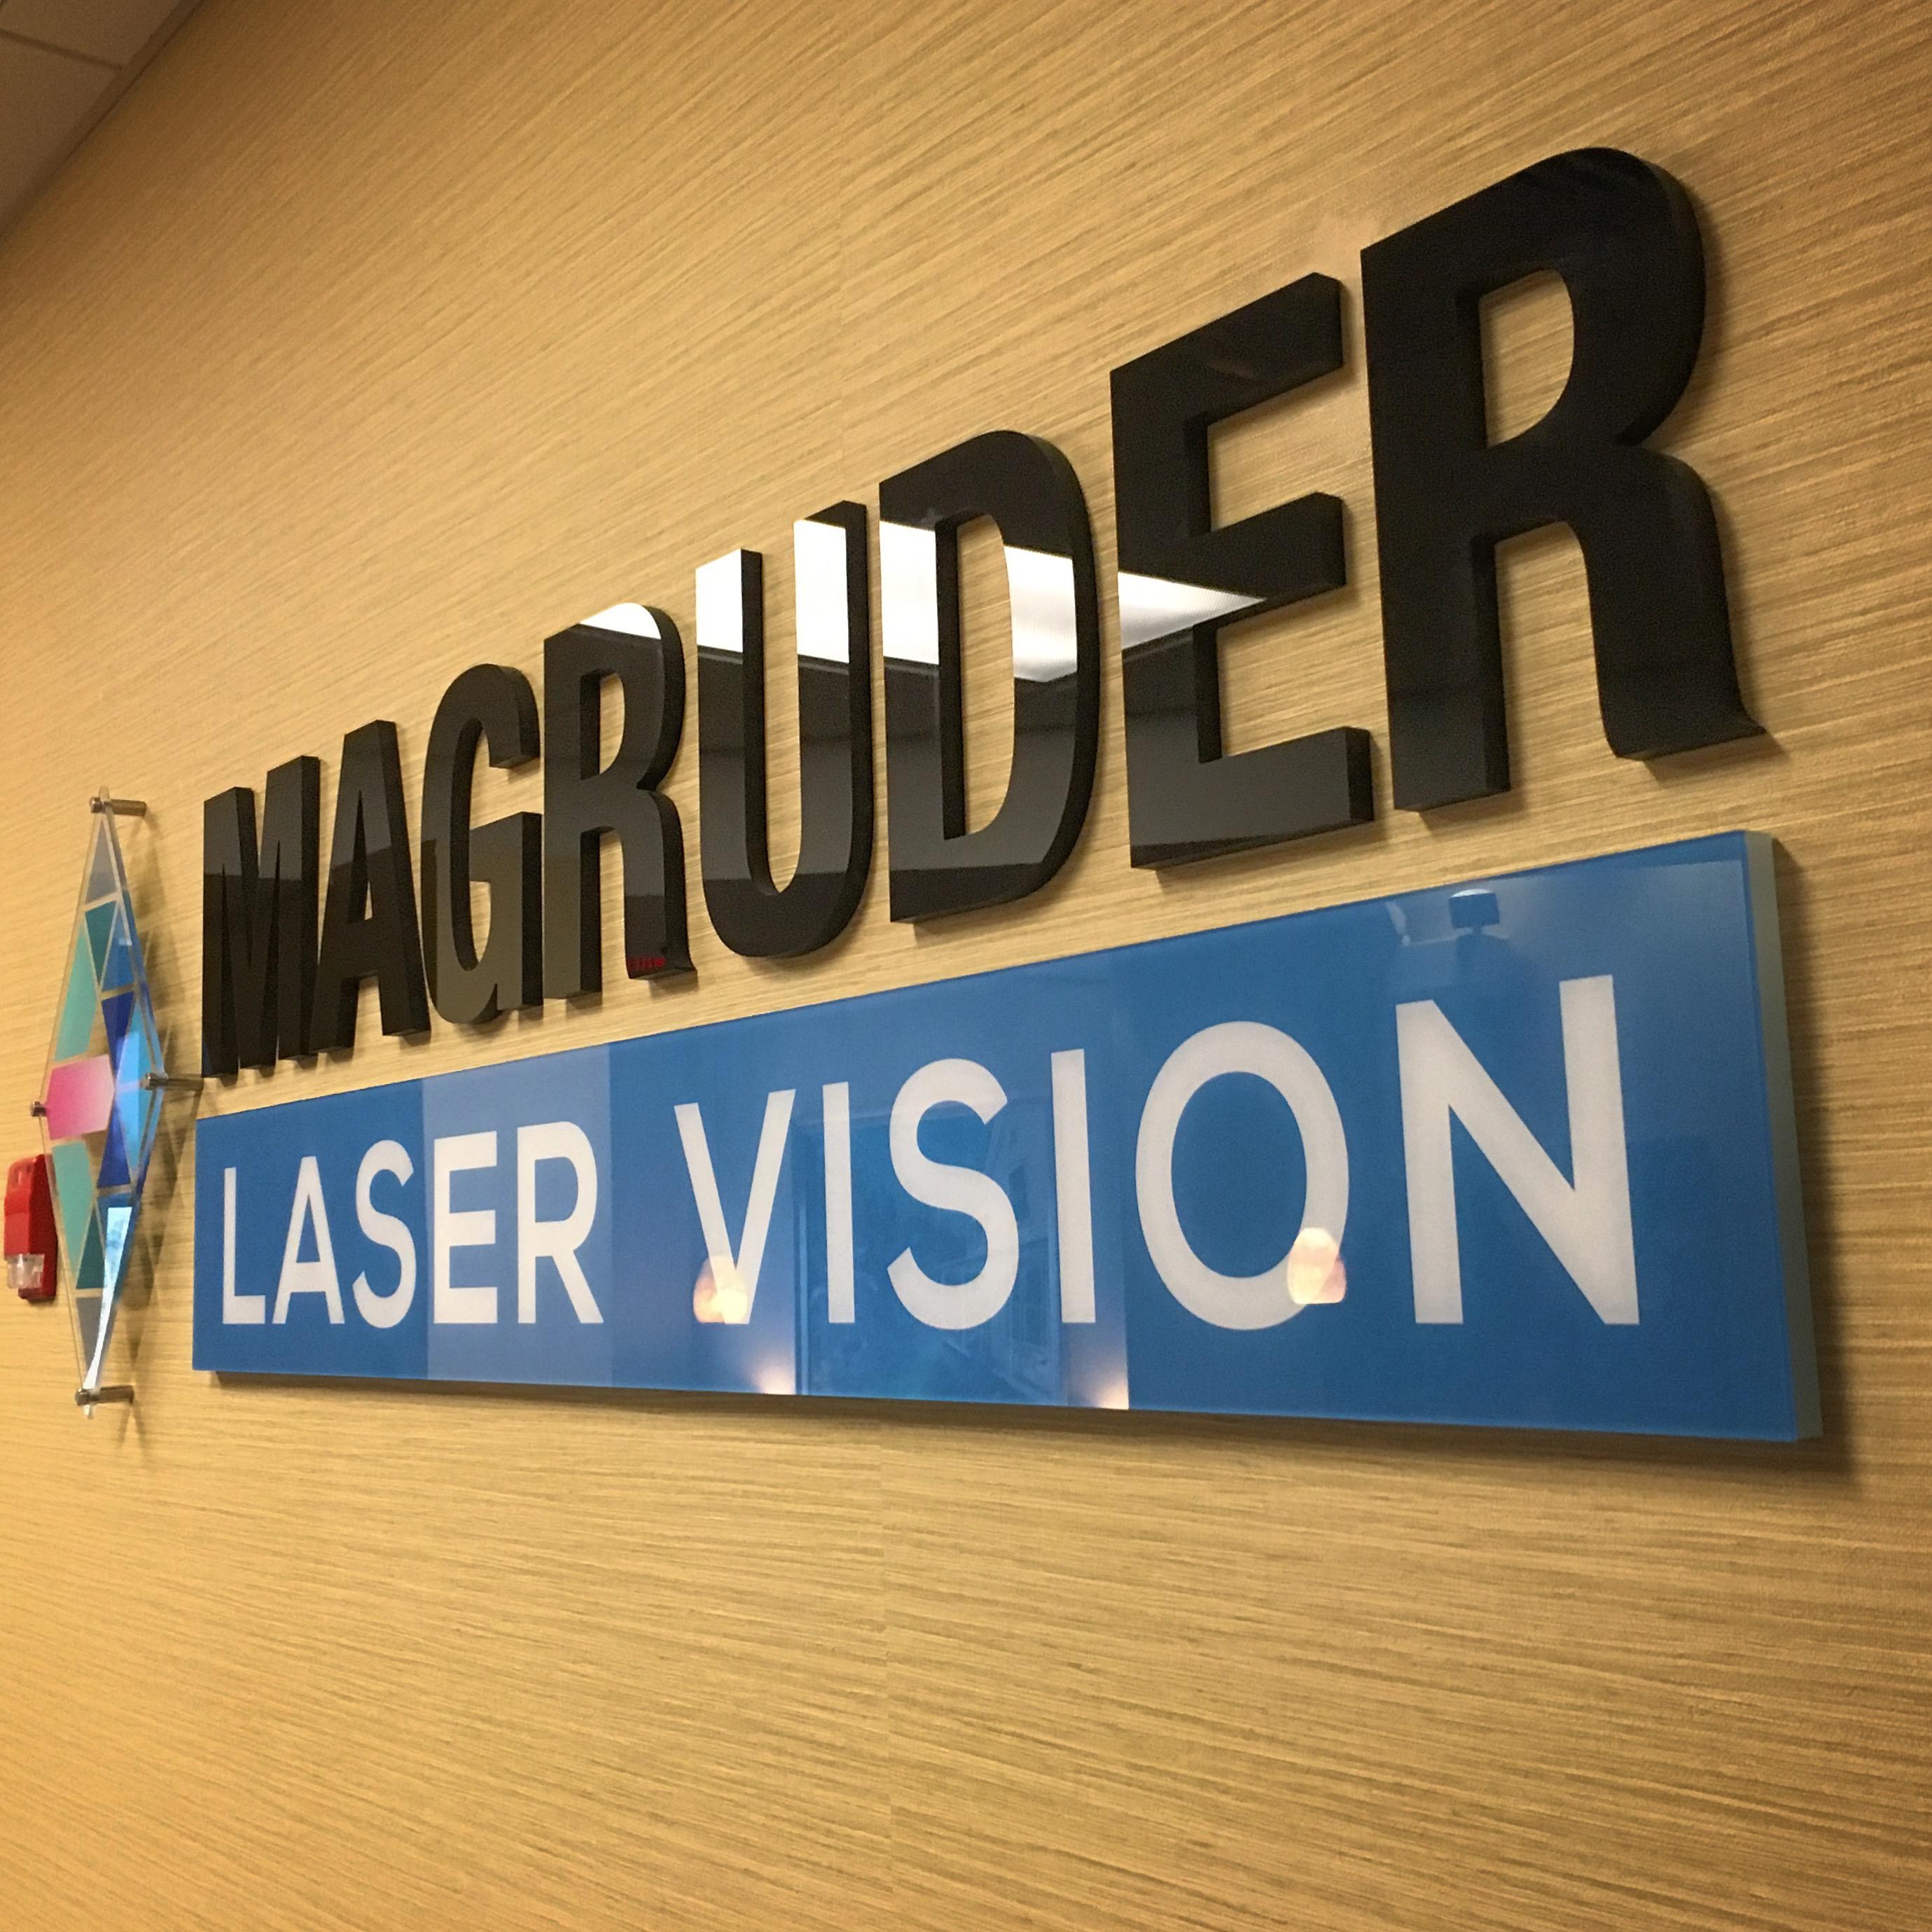 Magruder Laser Vision Photo